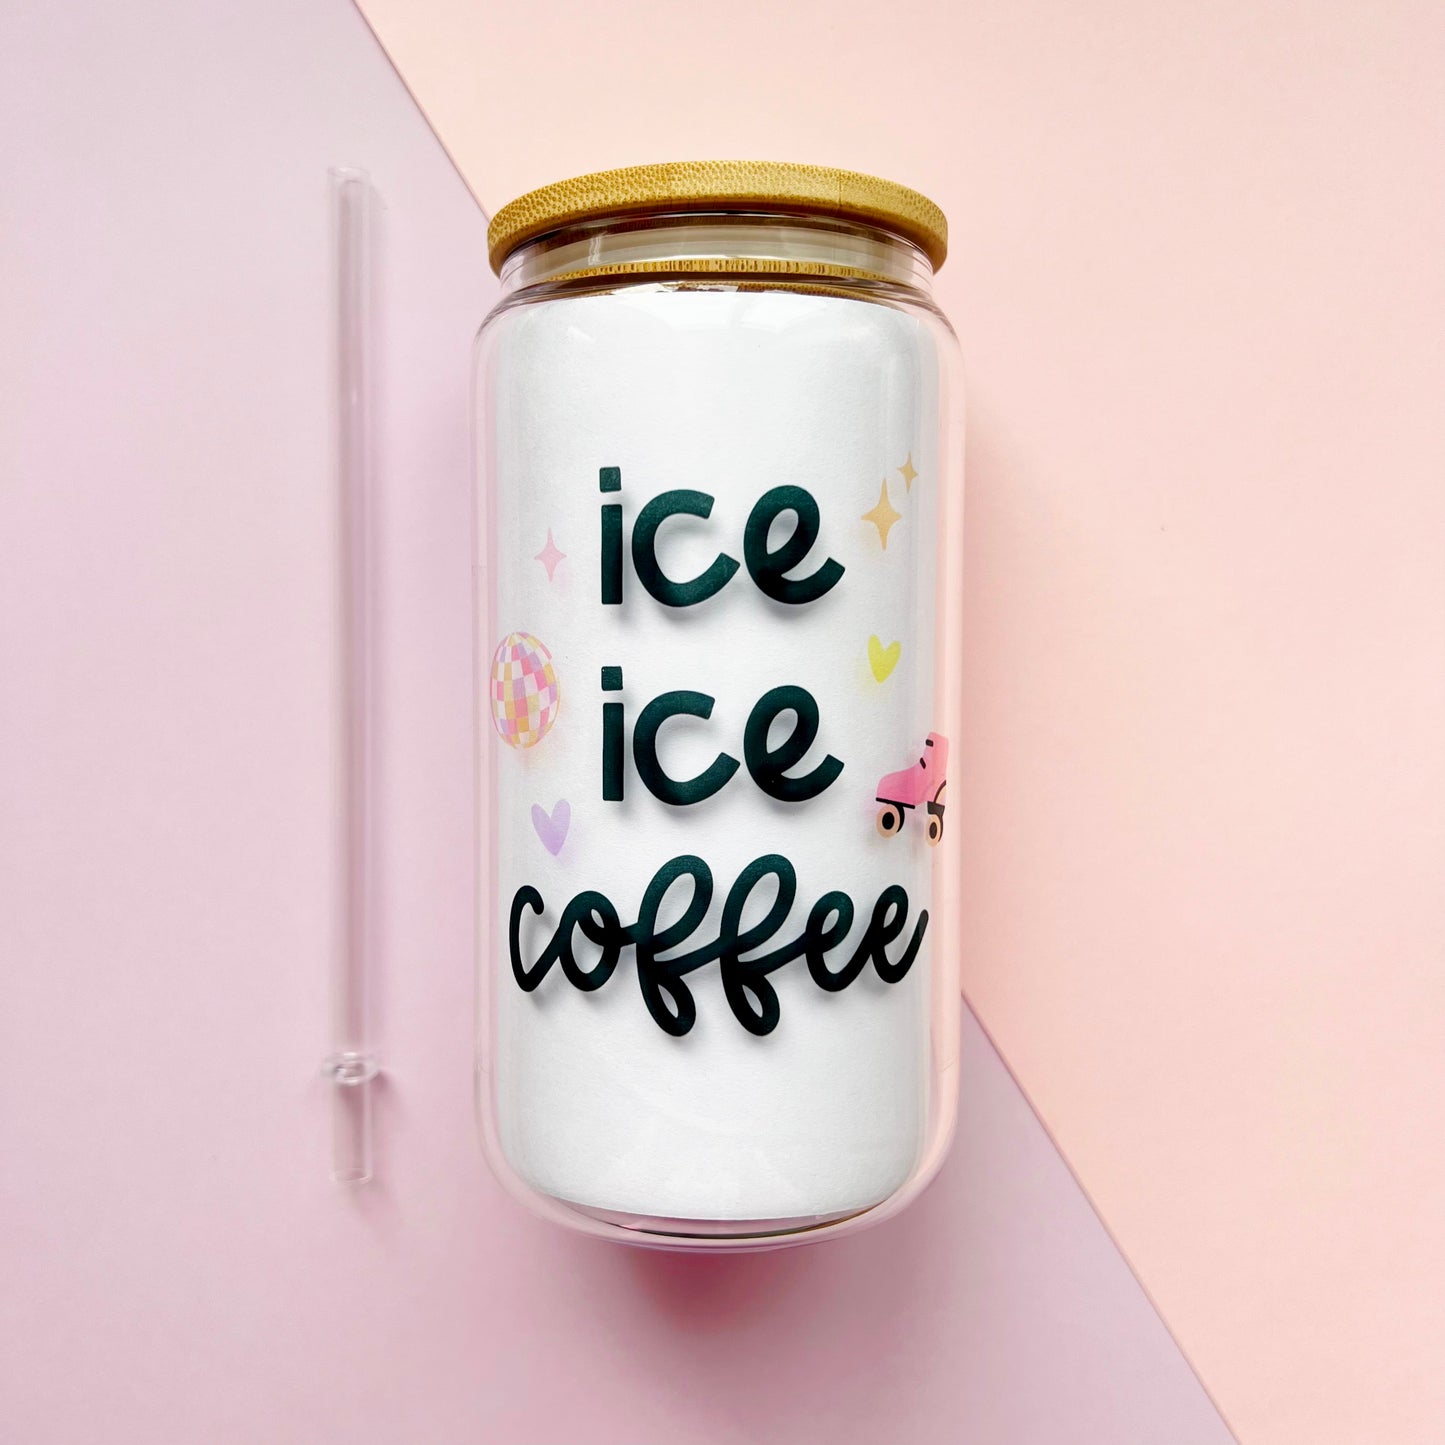 'Ice Ice Coffee' Iced Coffee Cup